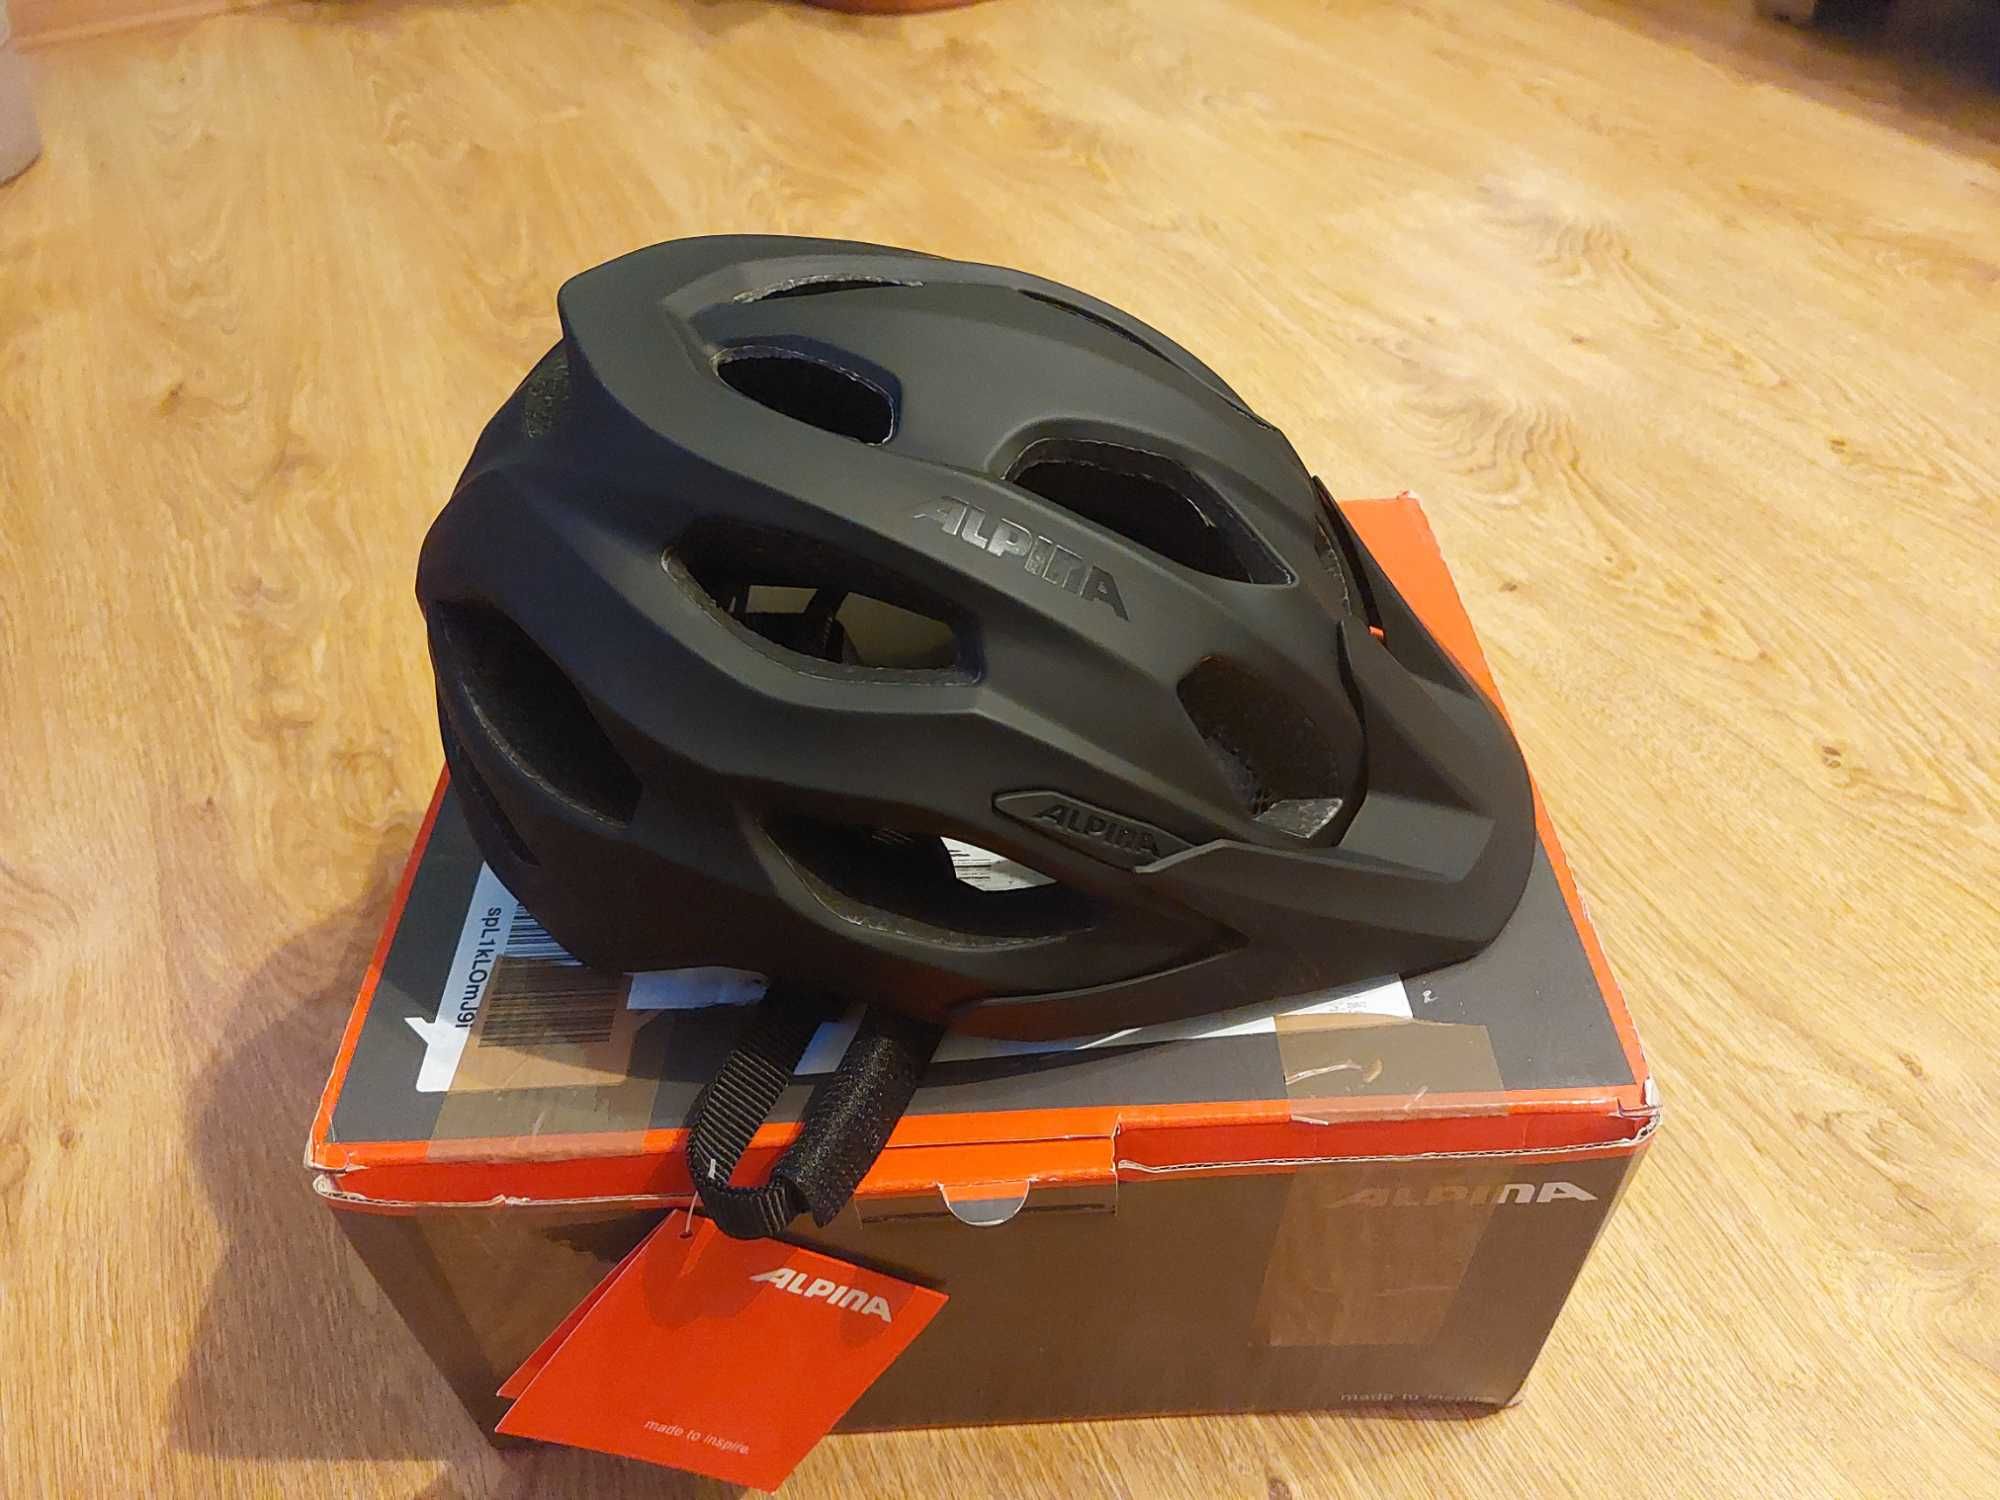 Na sprzedaż posiadam nowy kask rowerowy ALPINA carapax 2.0 black matt.